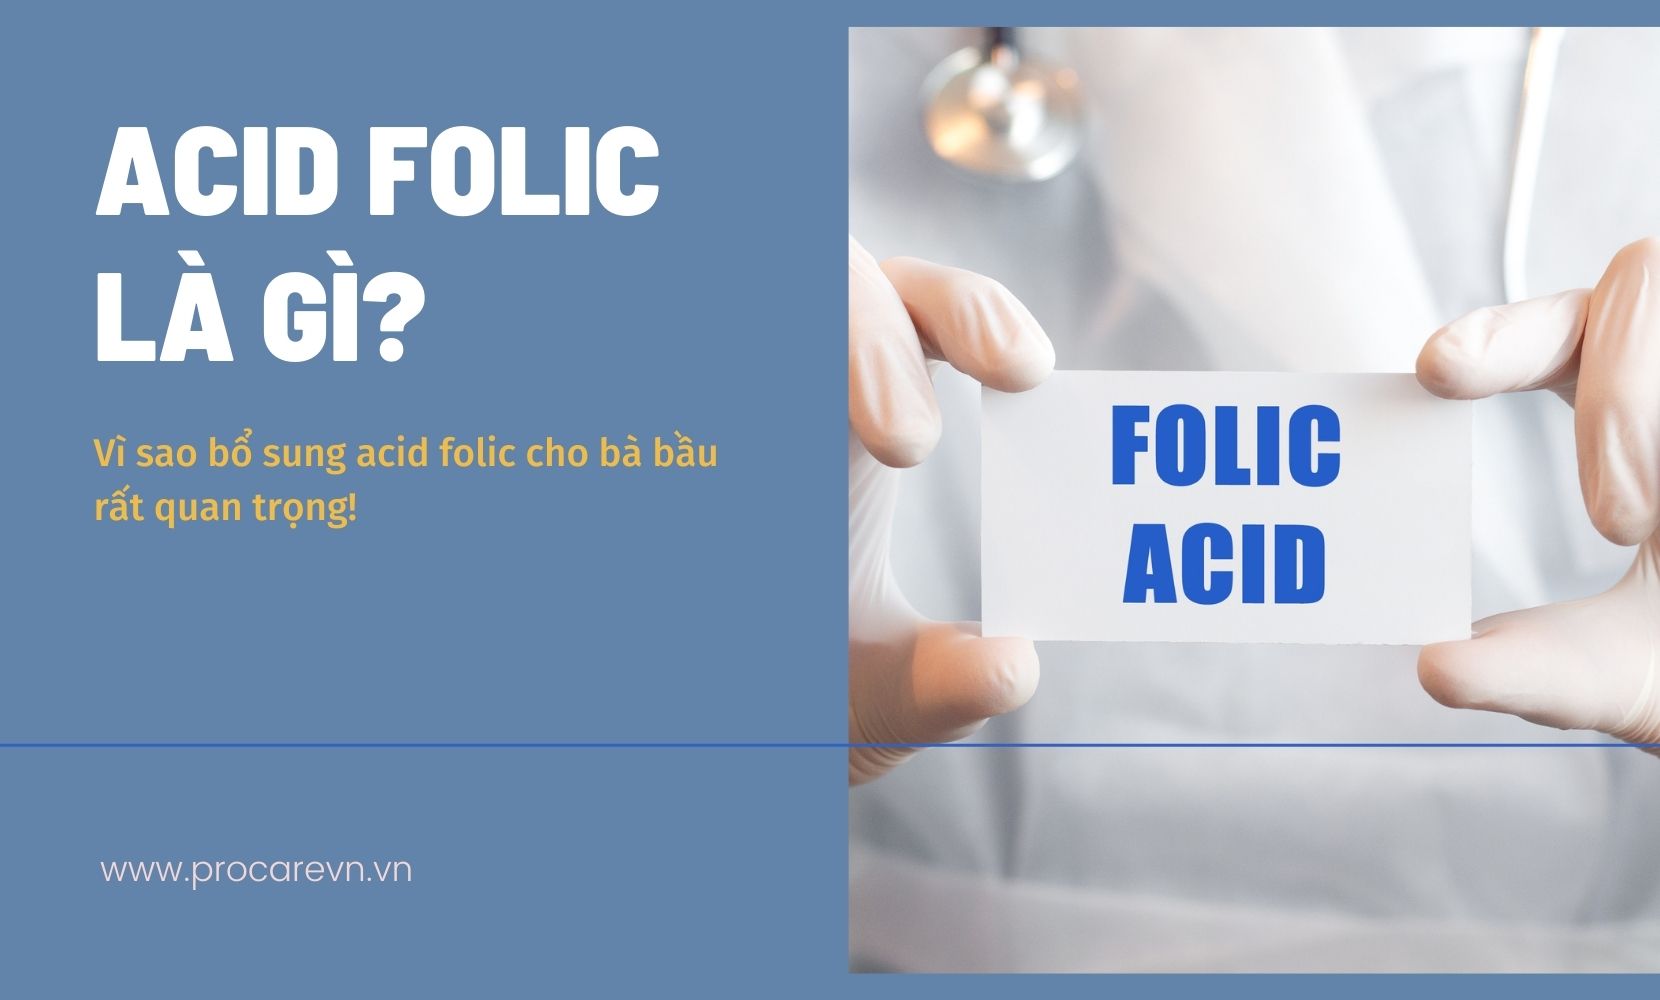 Thuốc axit folic có tác động phụ hay tương tác không? 
